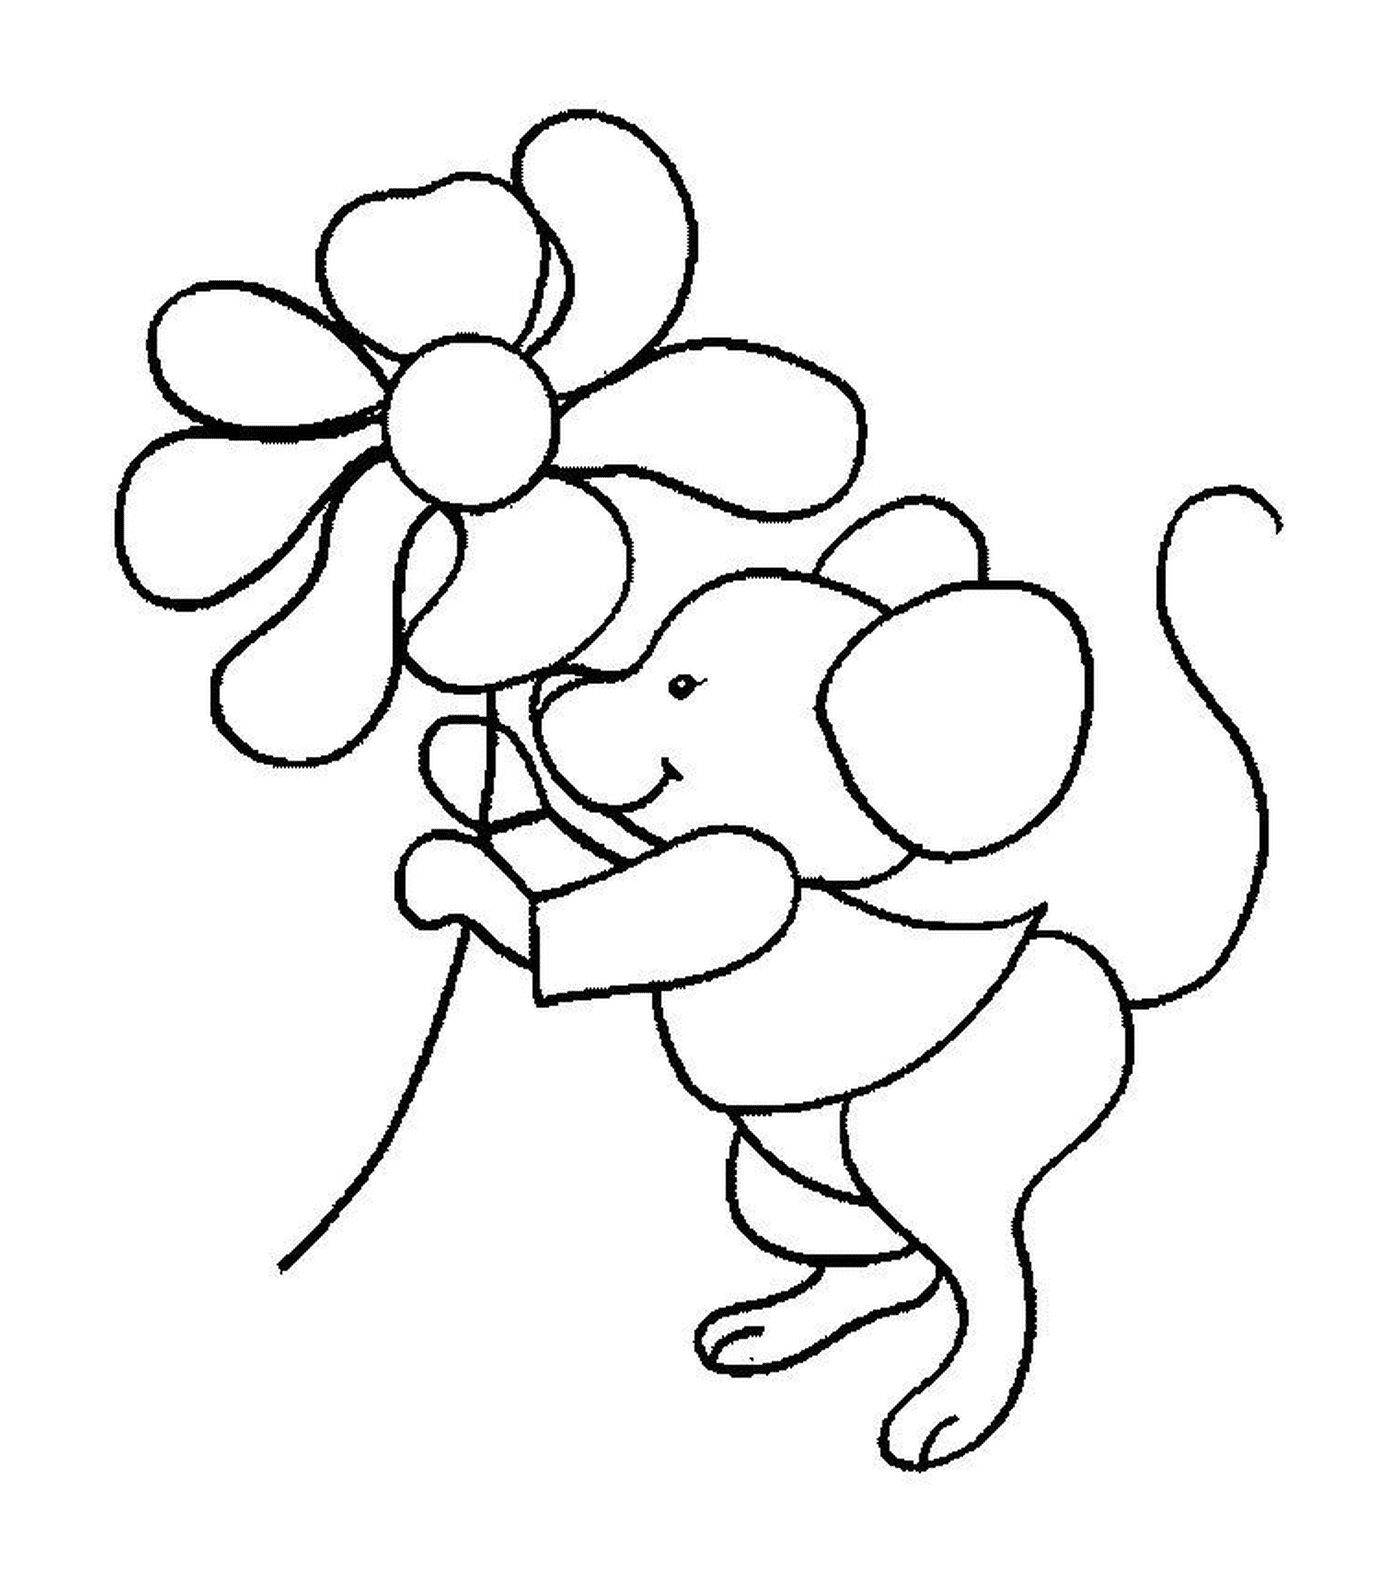  Un ratón sosteniendo una flor 